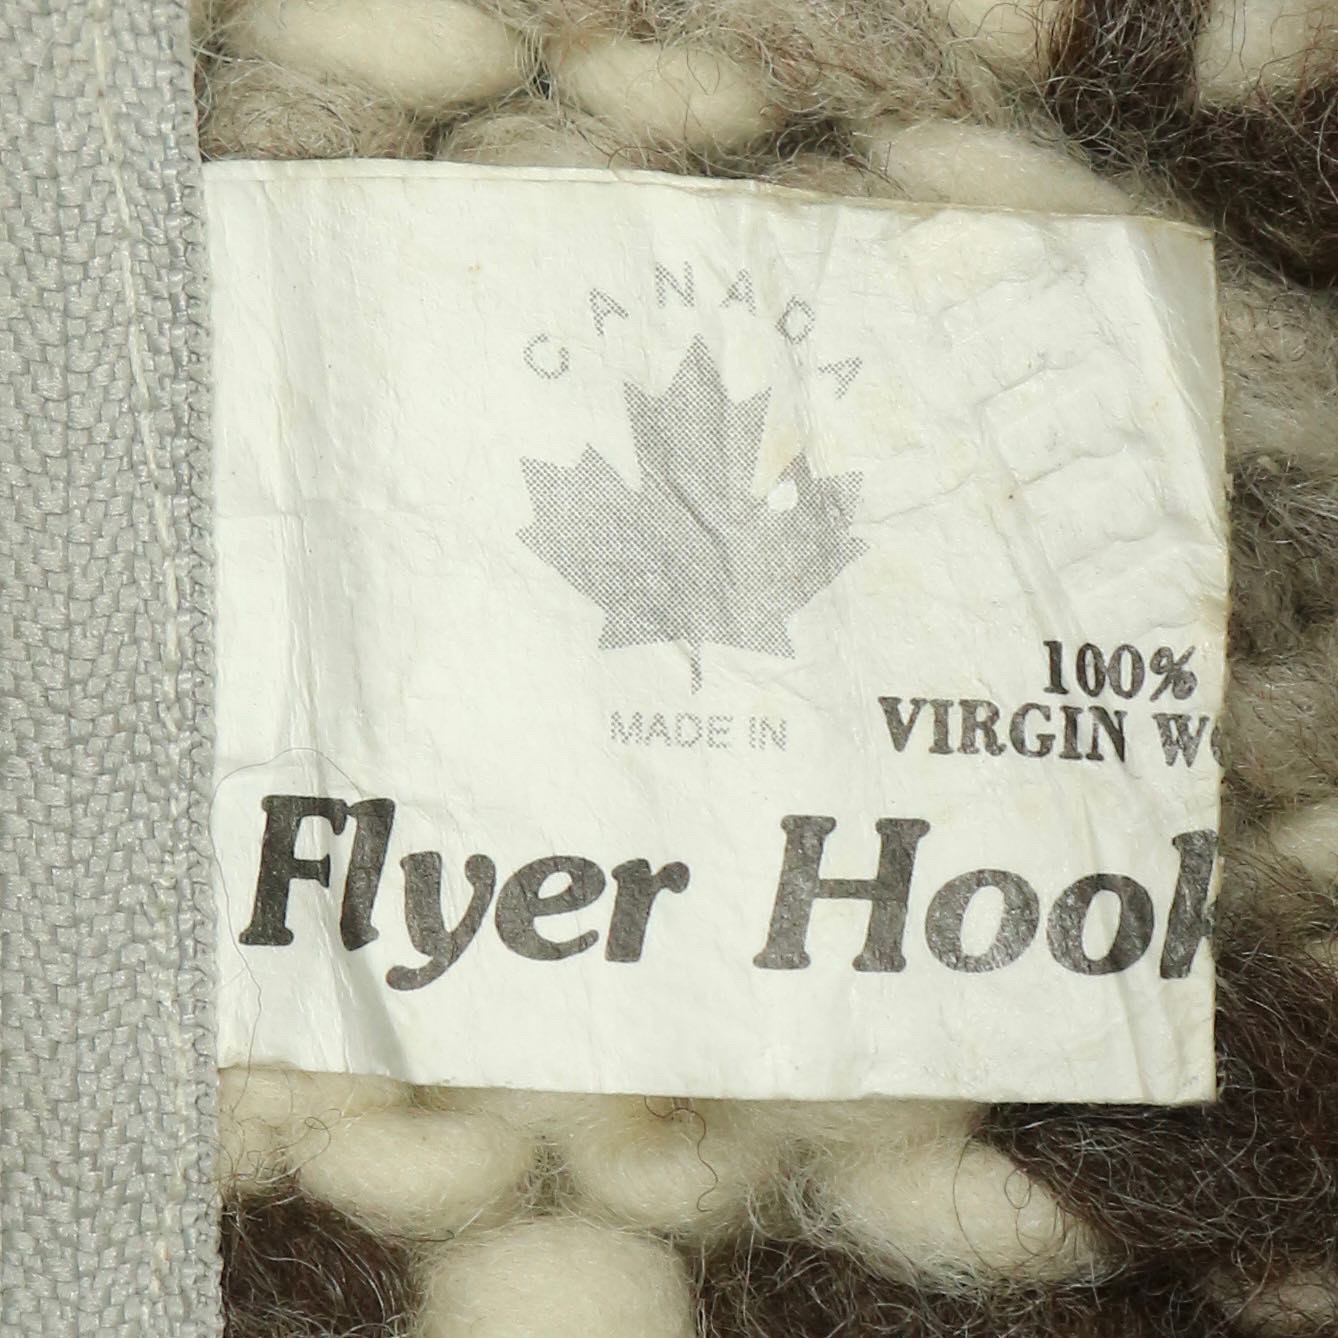 Flyer Hooks Heavy Wool Cowichan Vest Size L